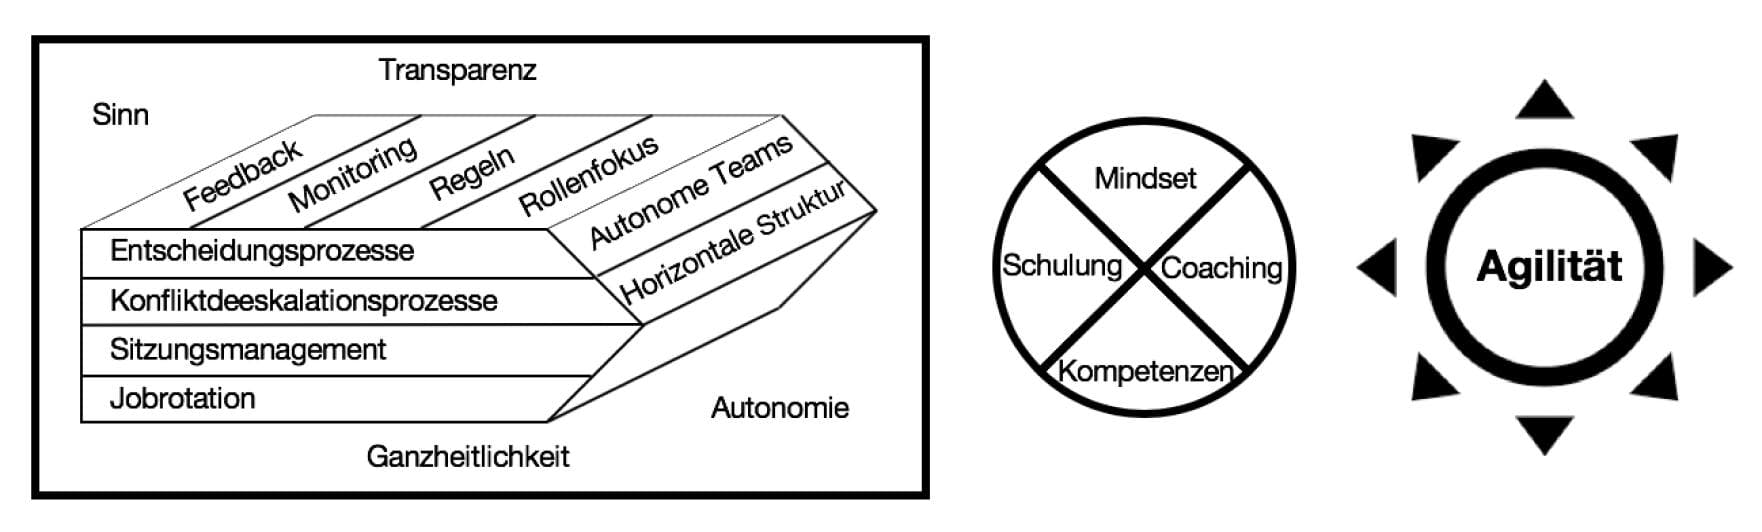 Organisationsmodell